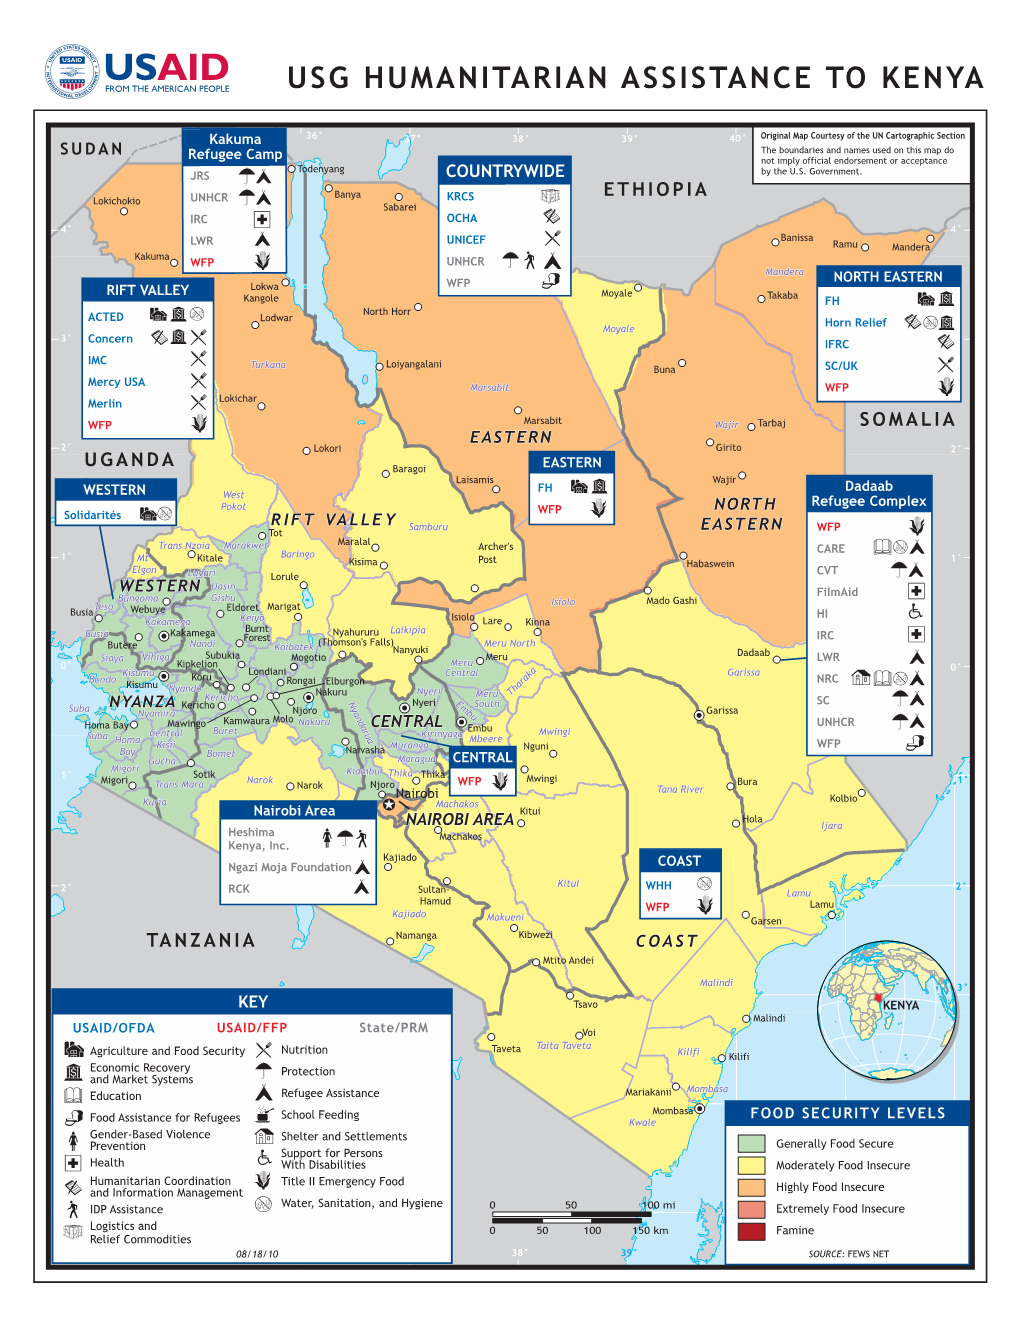 USAID/OFDA Kenya Program Map 8/18/2010